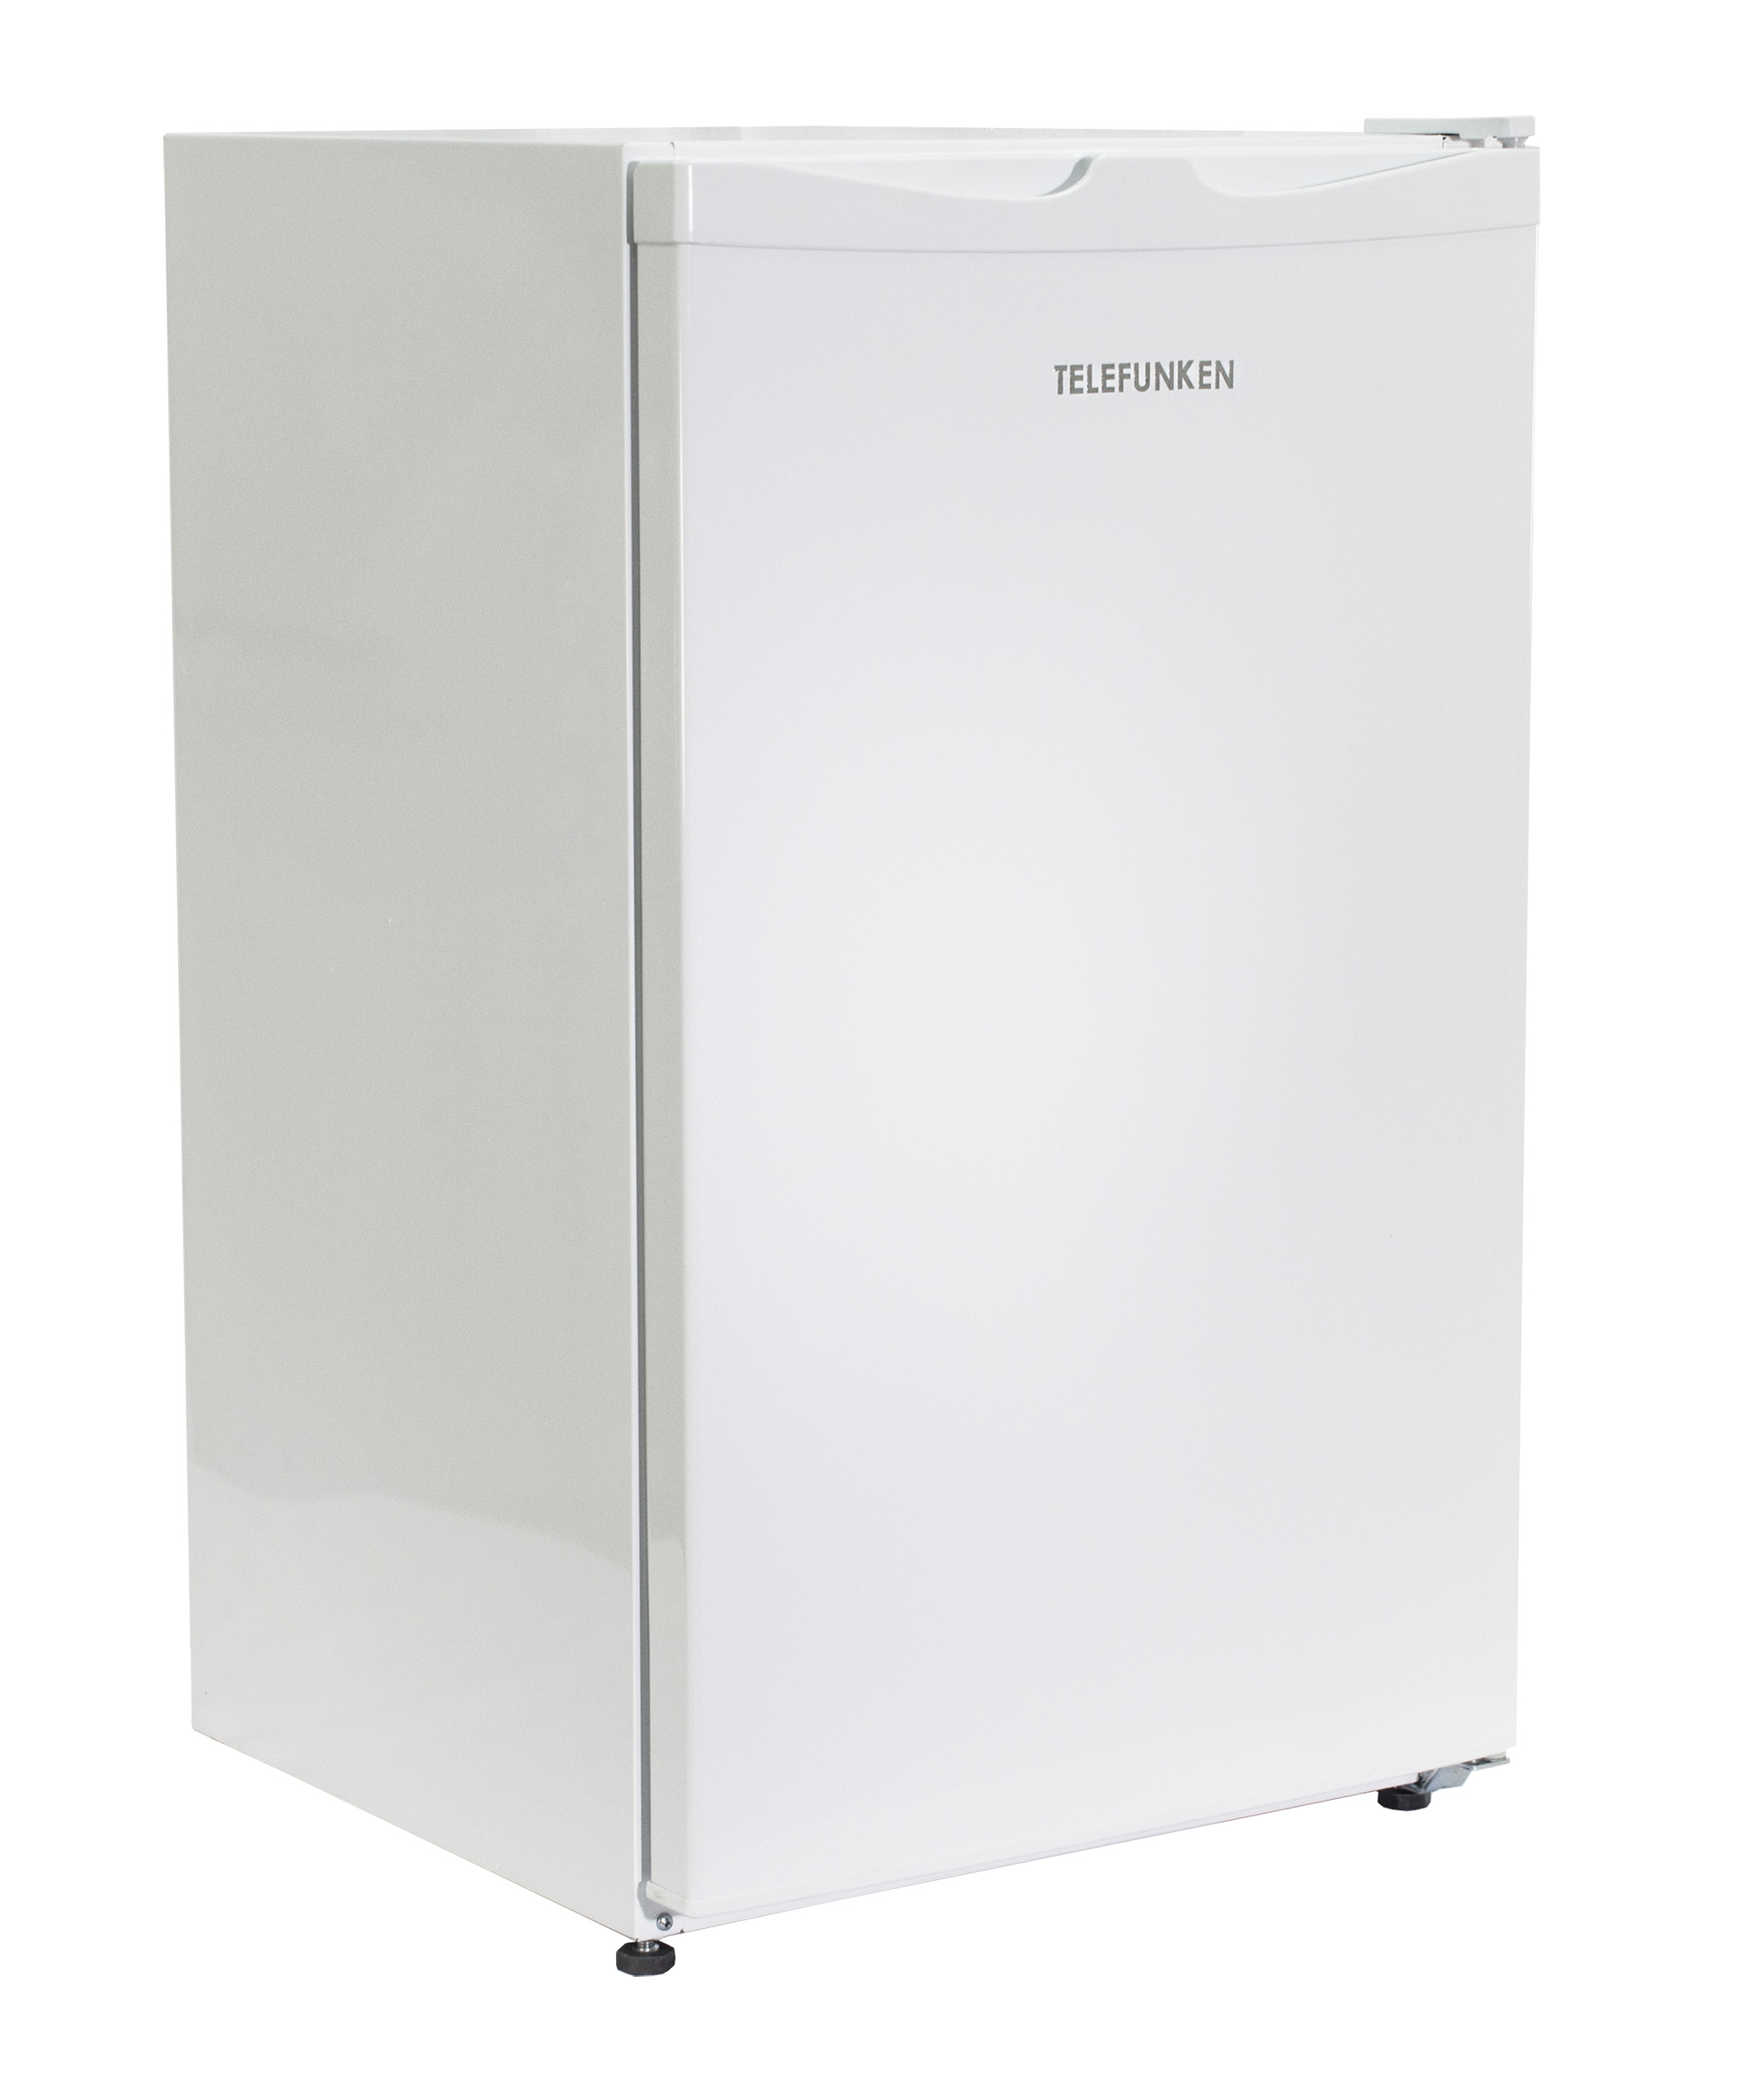 Kühlschrank TELEFUNKEN (F, Weiß) hoch, 821 mm CF-33-101-W